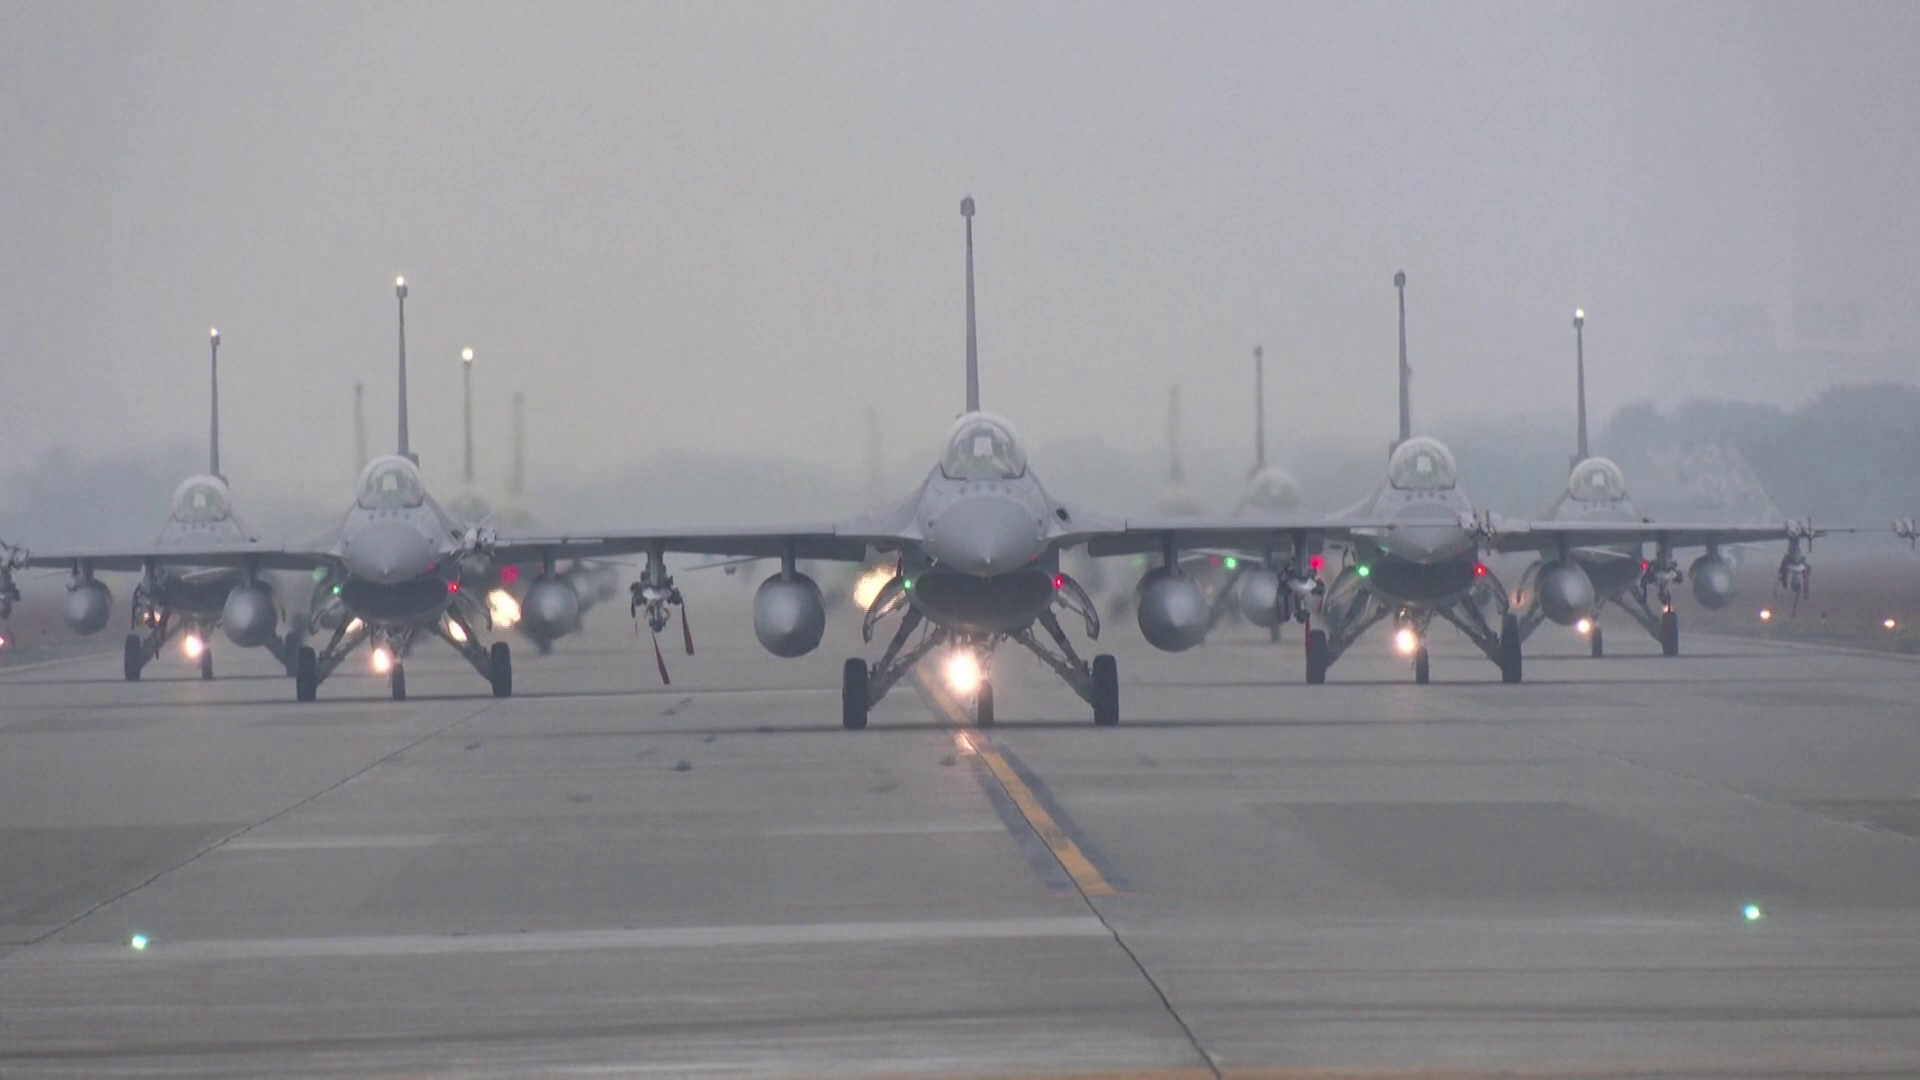  A tajvani védelmi tárca több tucat kínai katonai repülőgépet észlelt Tajvan közelében 